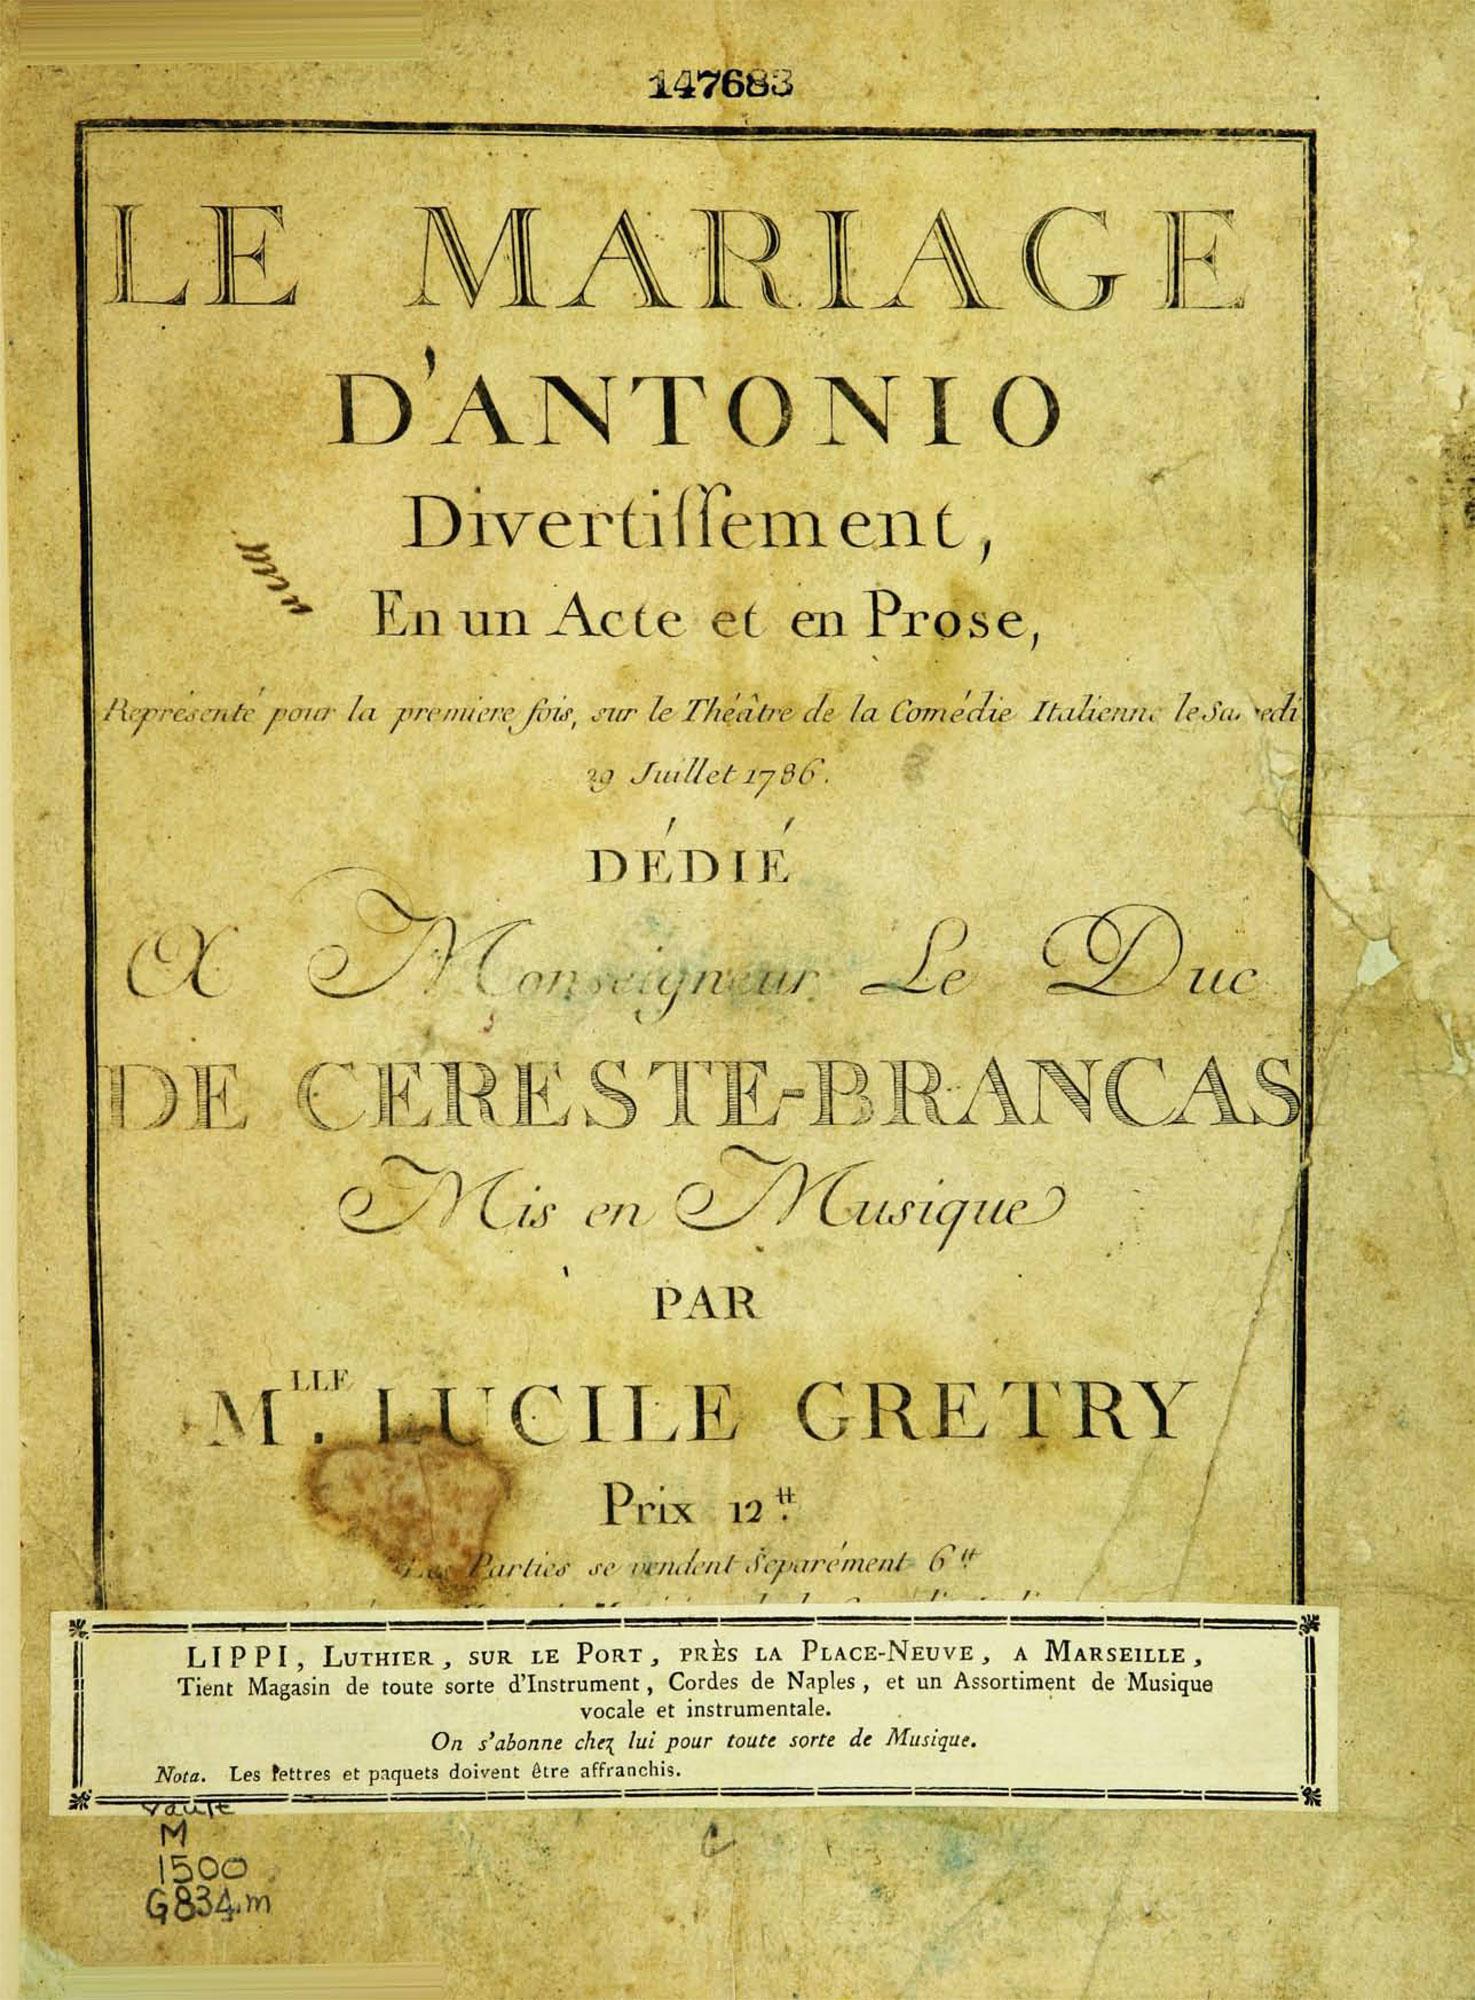 La couverture de la partition du "Mariage d'Antonio" mis en musique par Lucile Grétry. [DP]